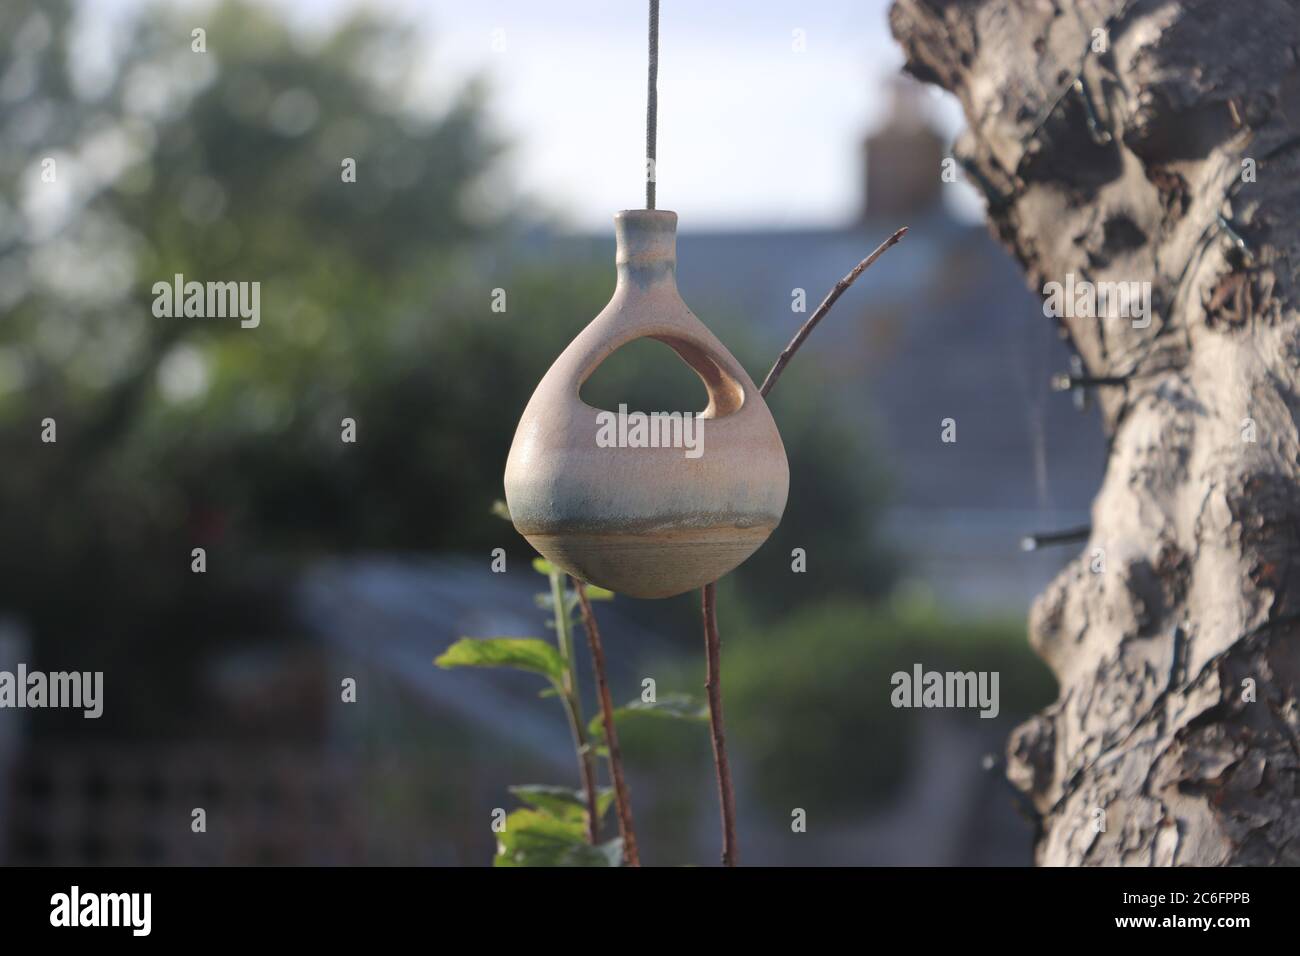 petite maison d'oiseaux accrochée à l'arbre dans le cadre du jardin Banque D'Images